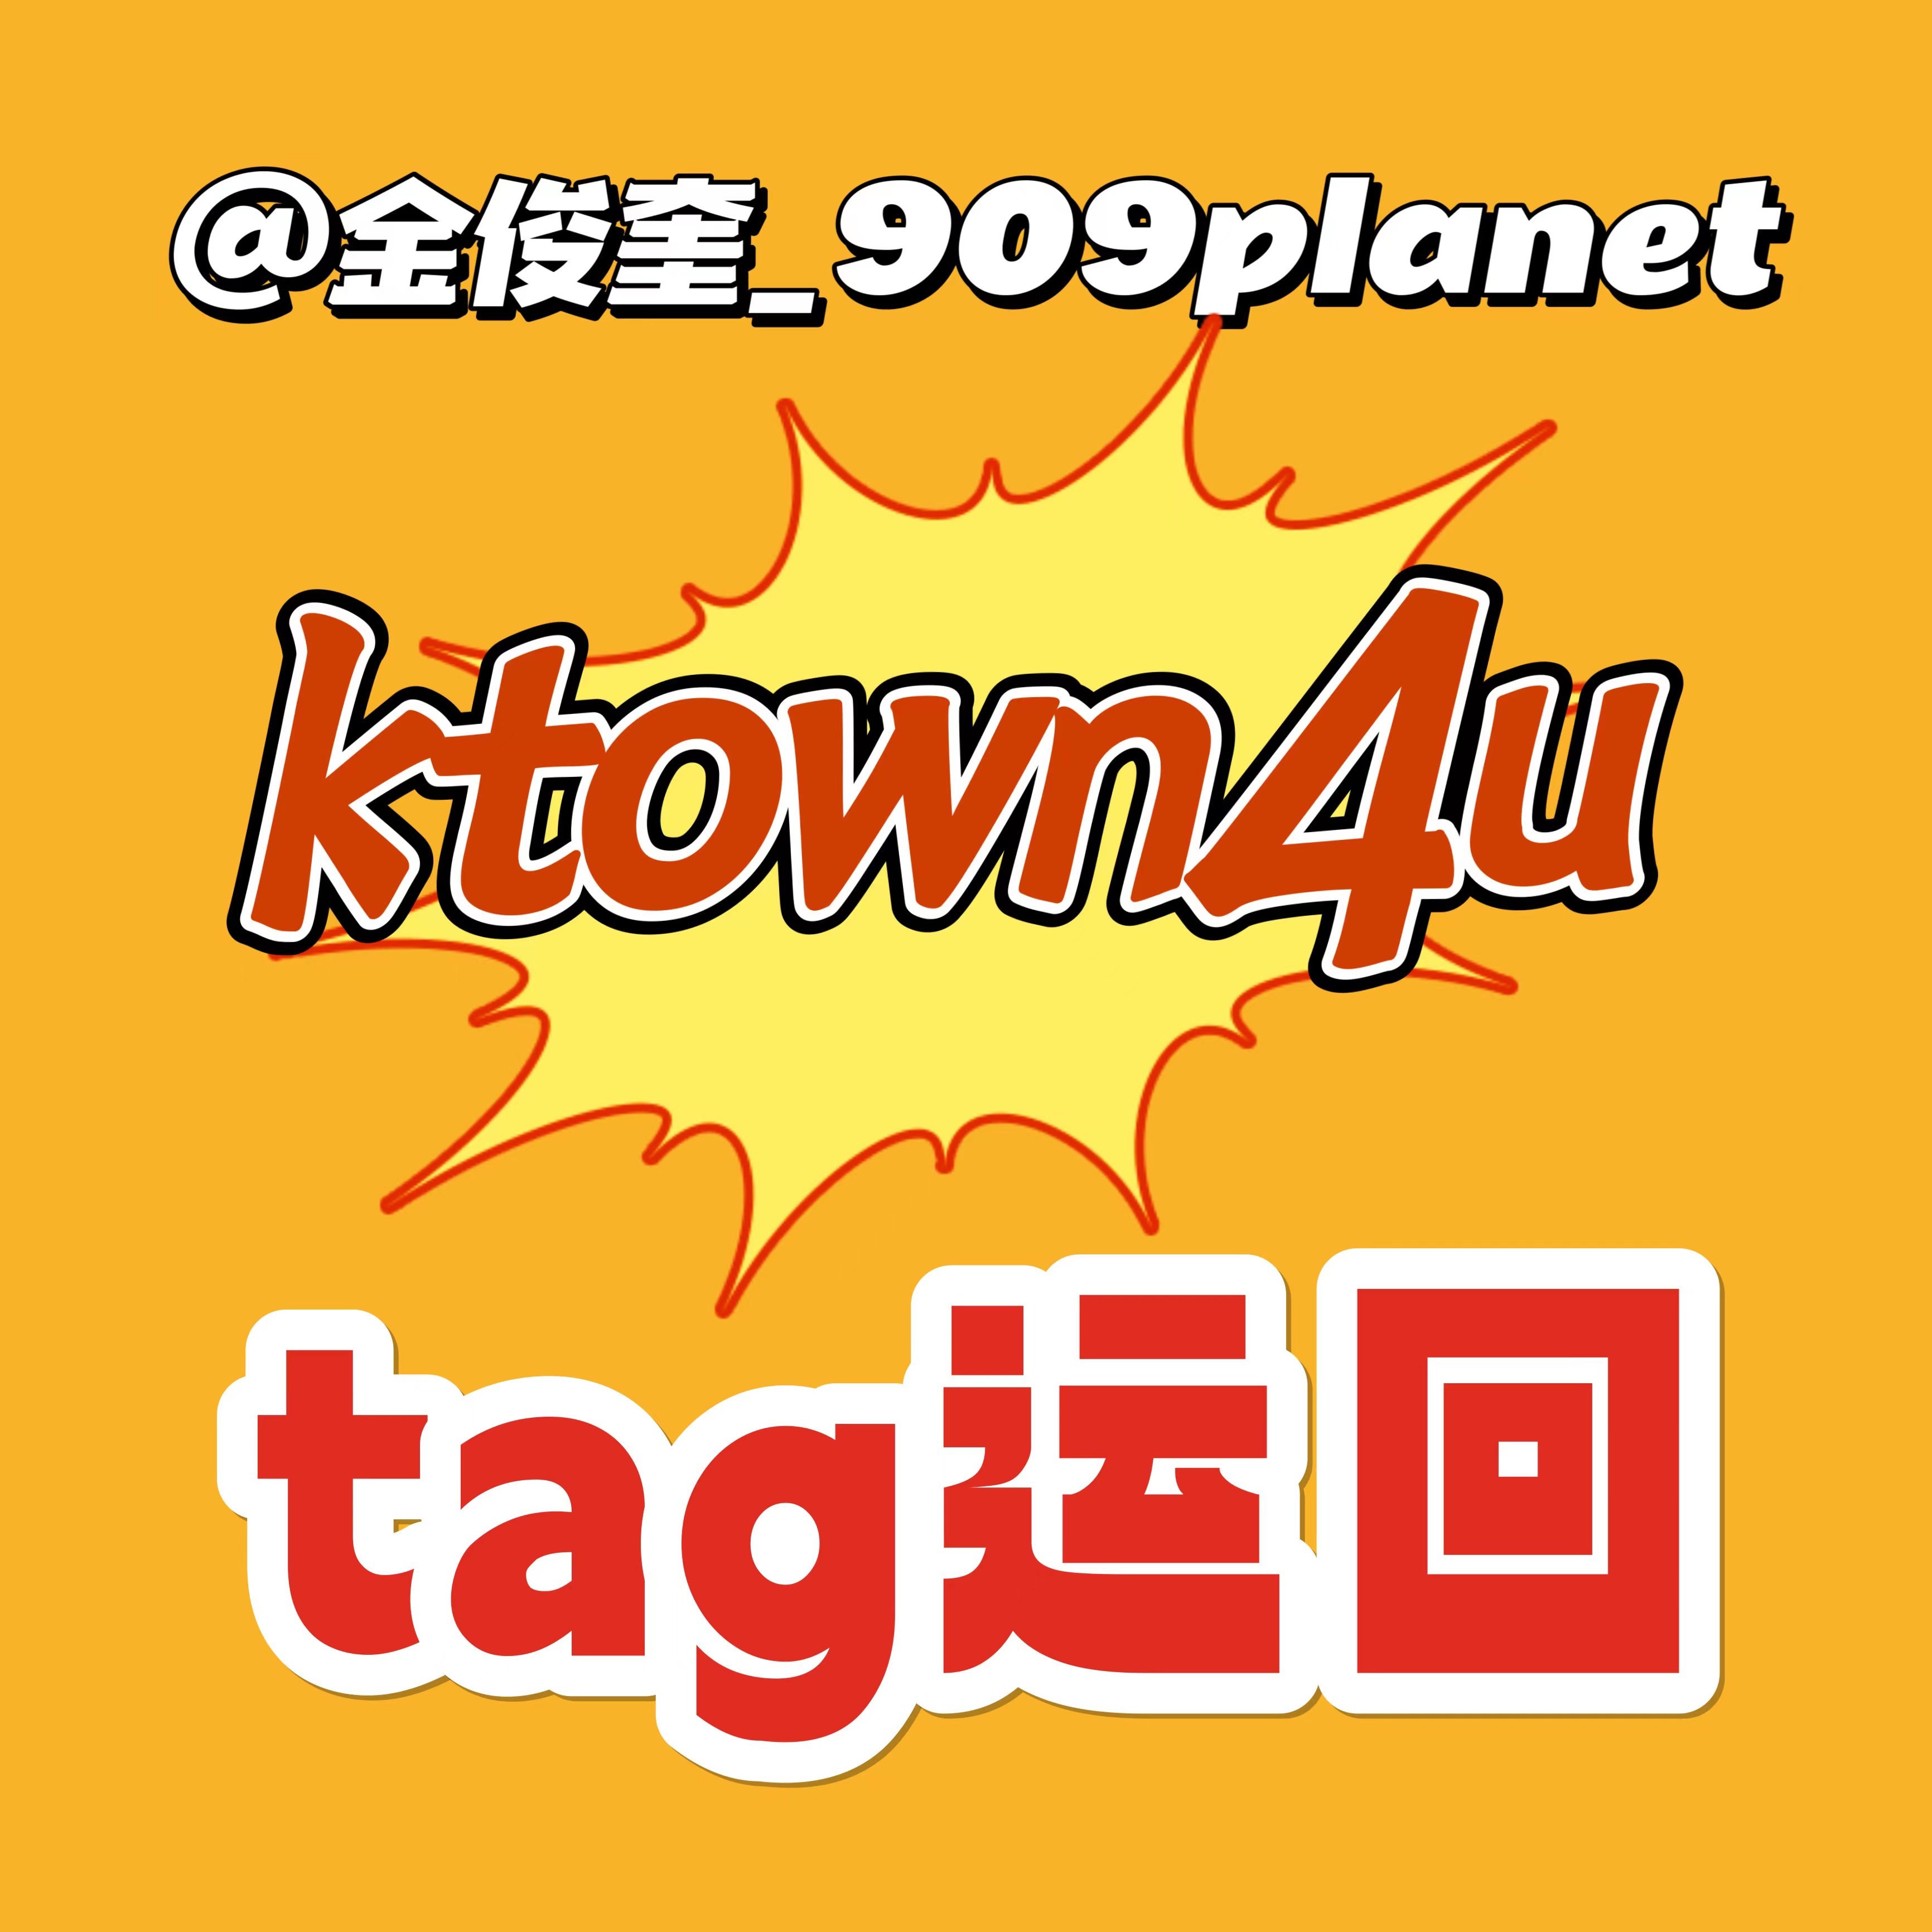 [全款 裸专] [Ktown4u Special Gift] TREASURE - 2ND FULL ALBUM [REBOOT] YG TAG ALBUM (随机版本)_金俊奎909Planet